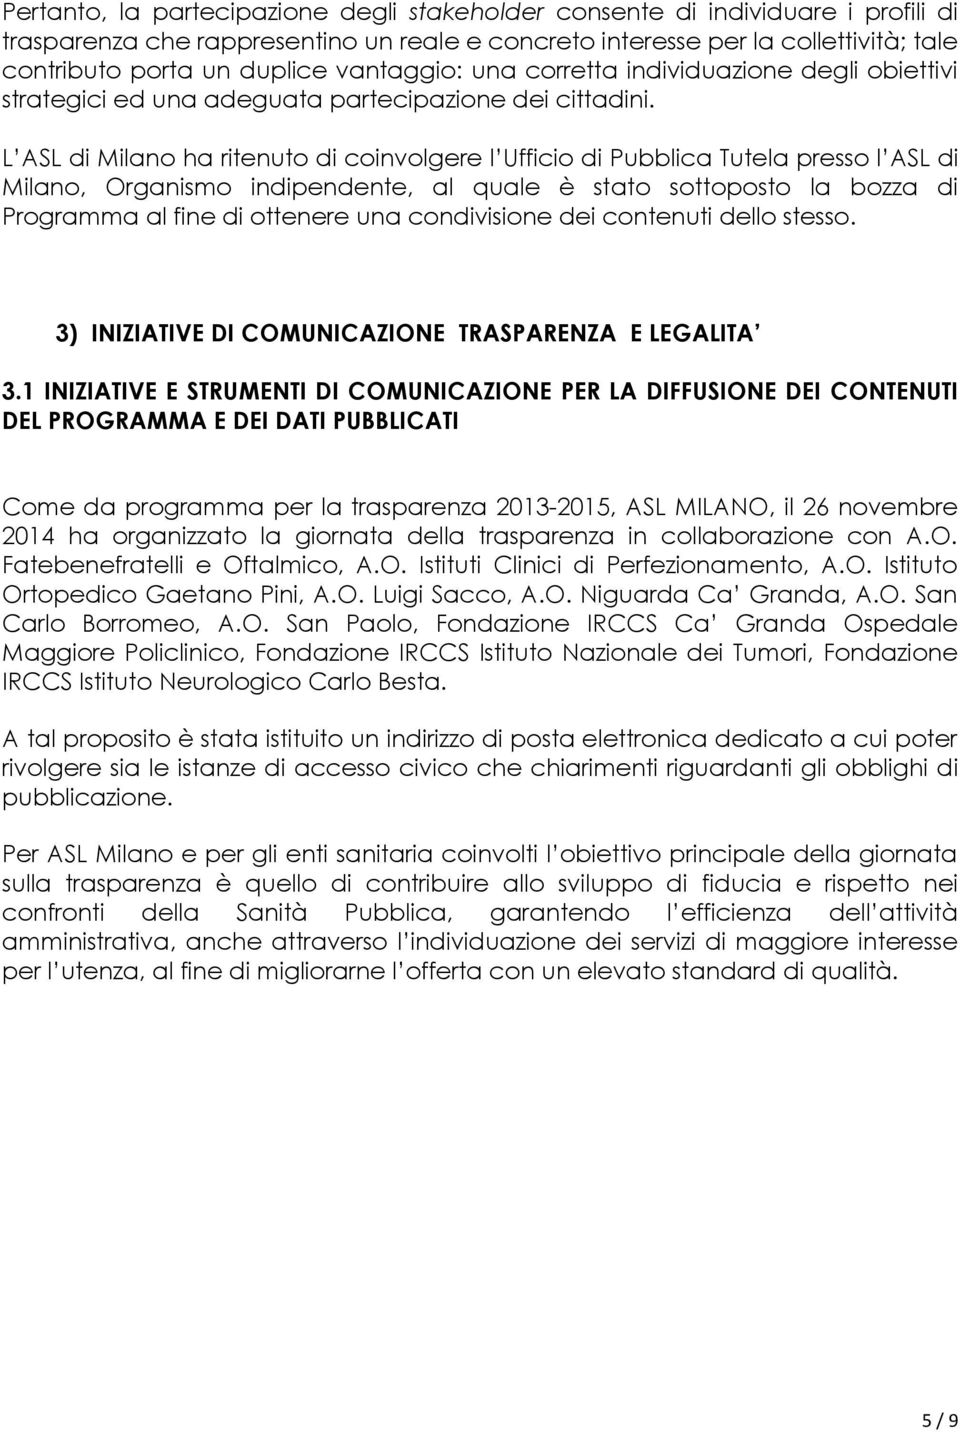 L ASL di Milano ha ritenuto di coinvolgere l Ufficio di Pubblica Tutela presso l ASL di Milano, Organismo indipendente, al quale è stato sottoposto la bozza di Programma al fine di ottenere una